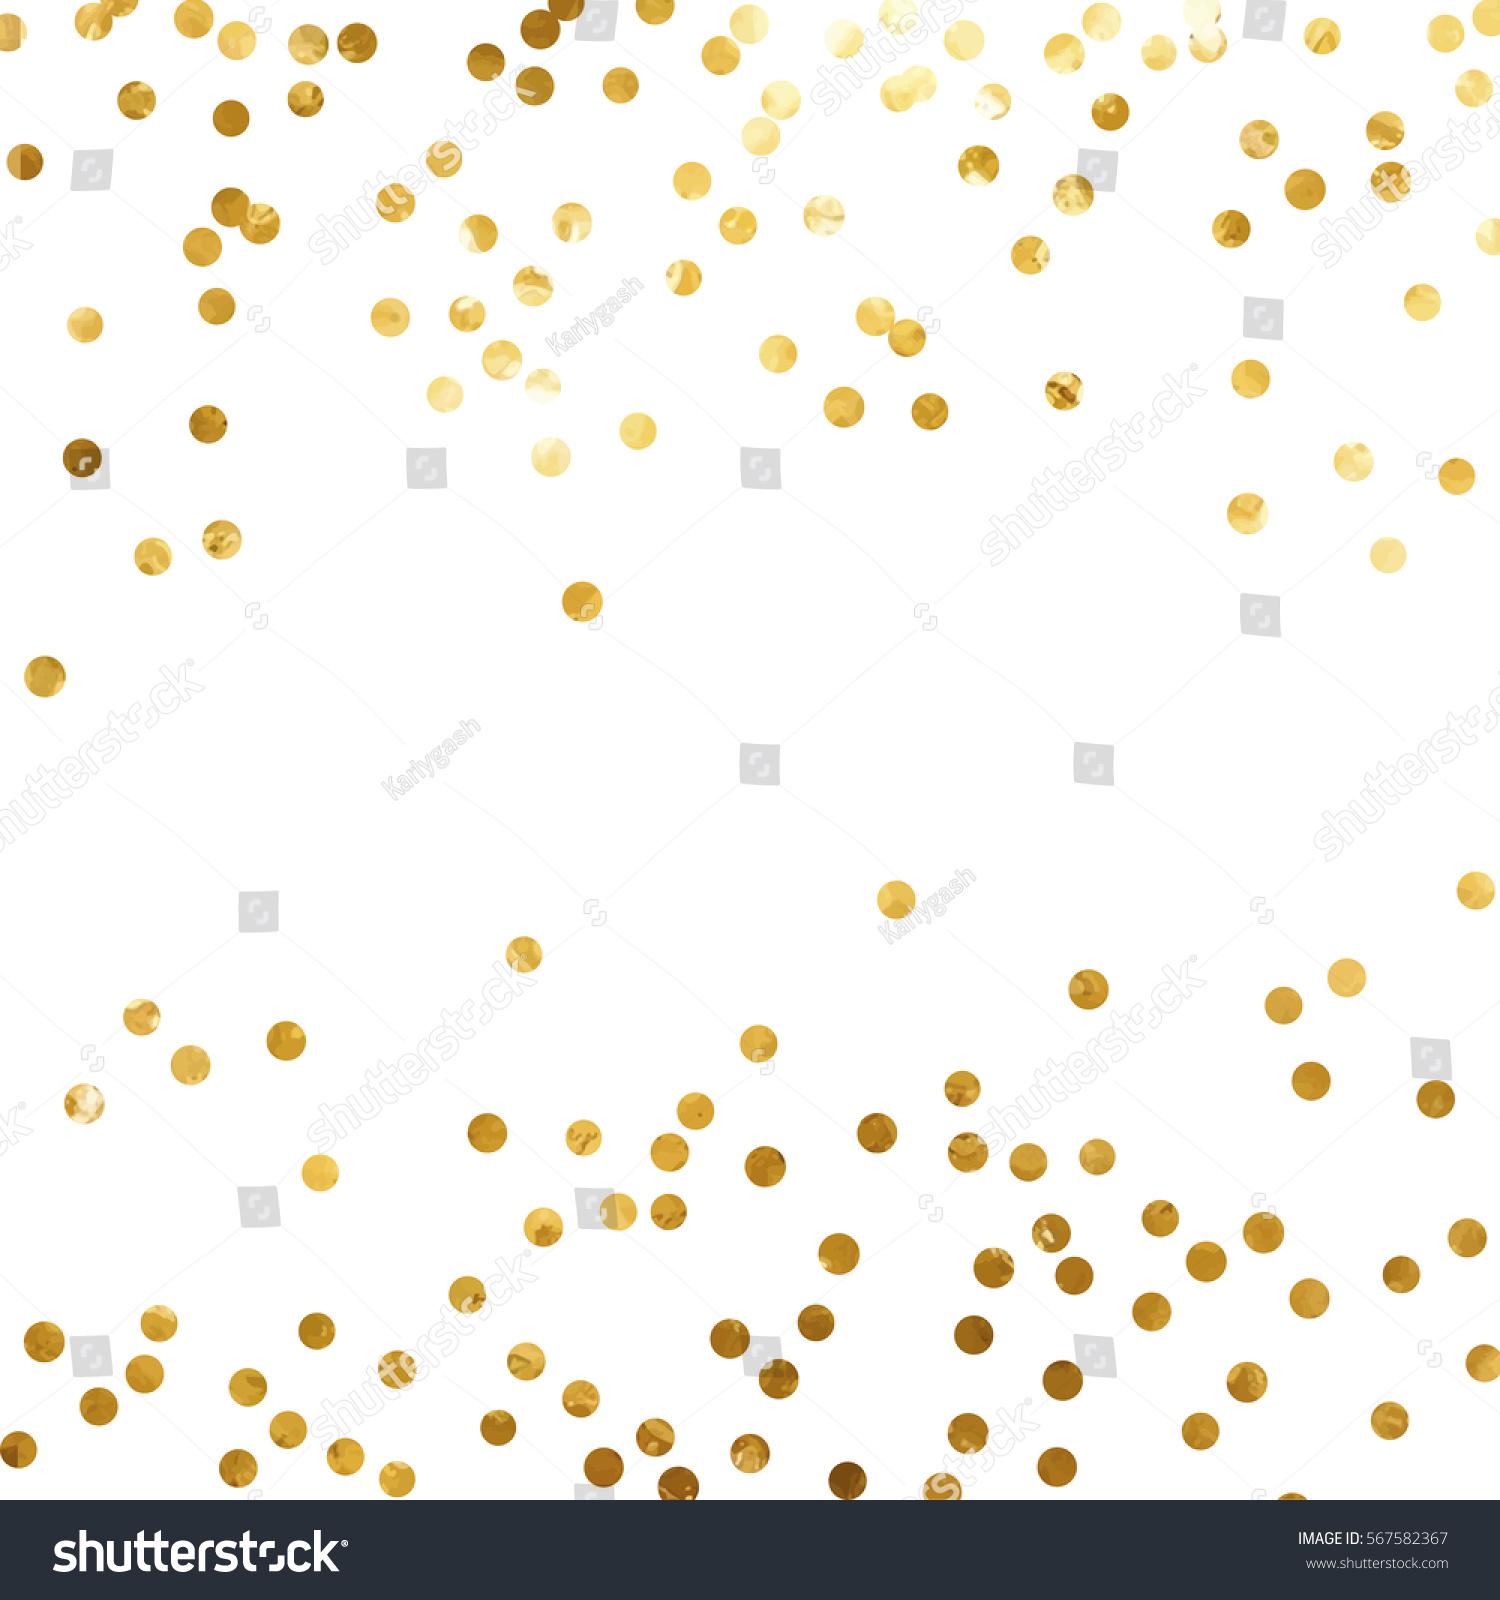 gold glitter background polka dot vector illustration #567582367